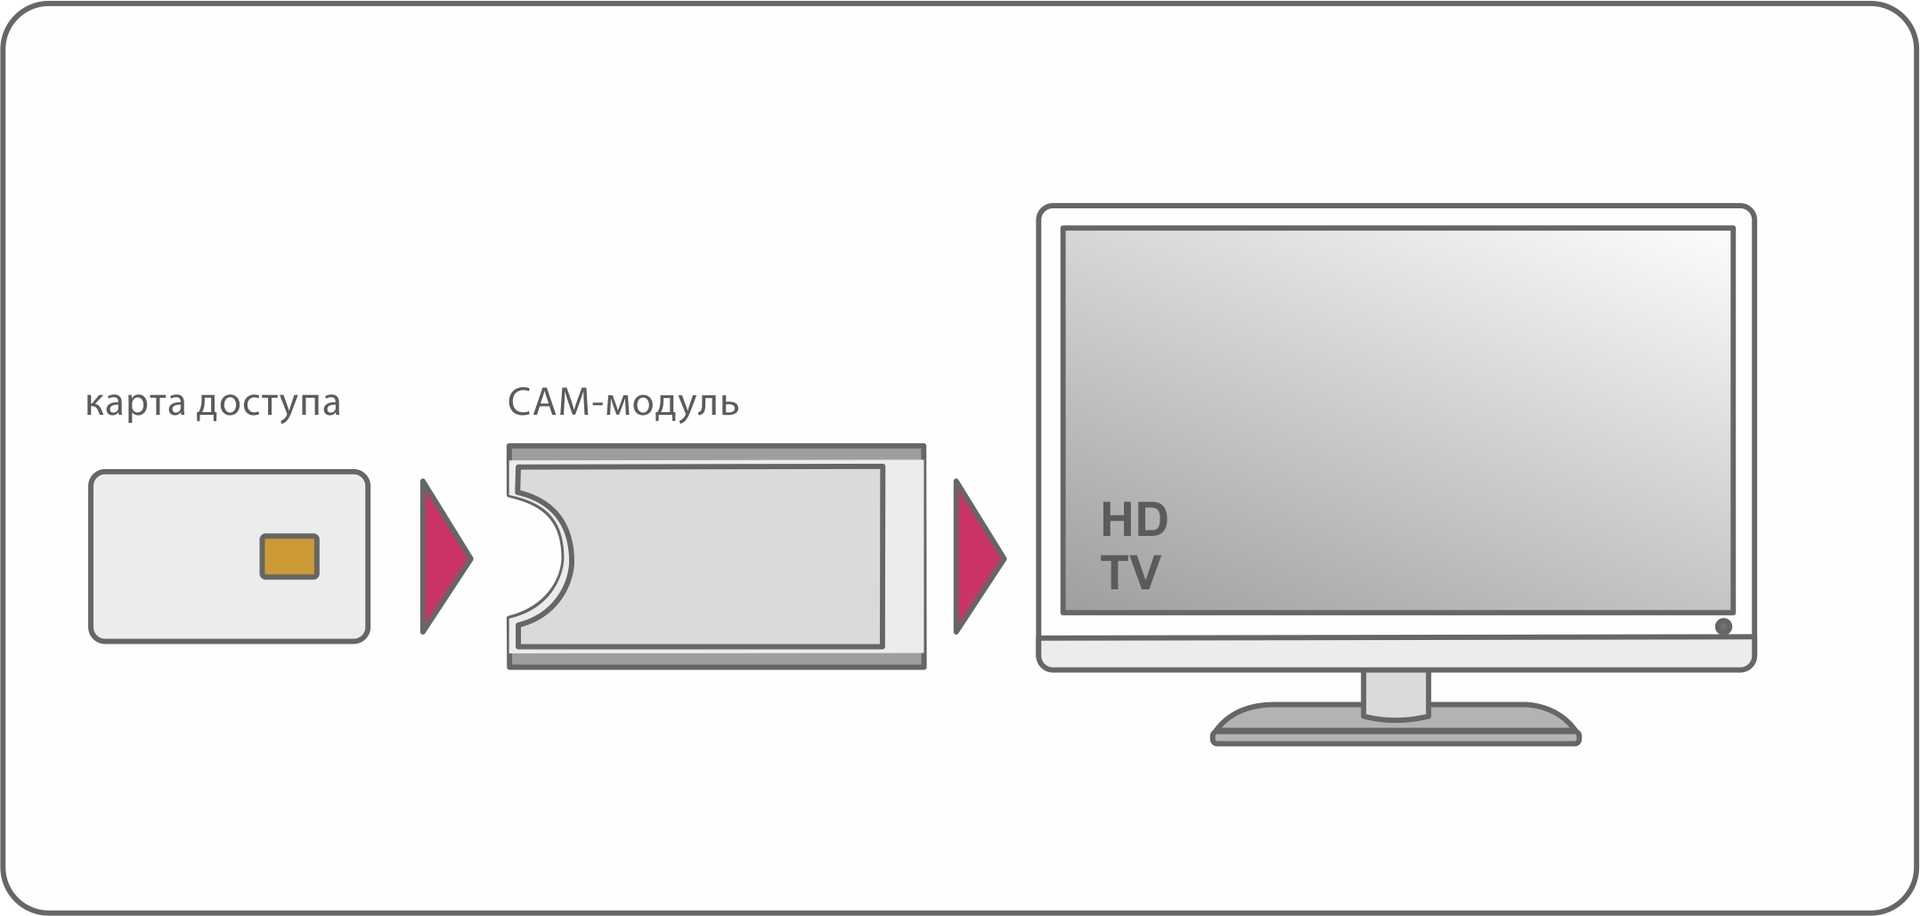 Телевизор ввк настройка цифровых каналов от антенны и кабеля